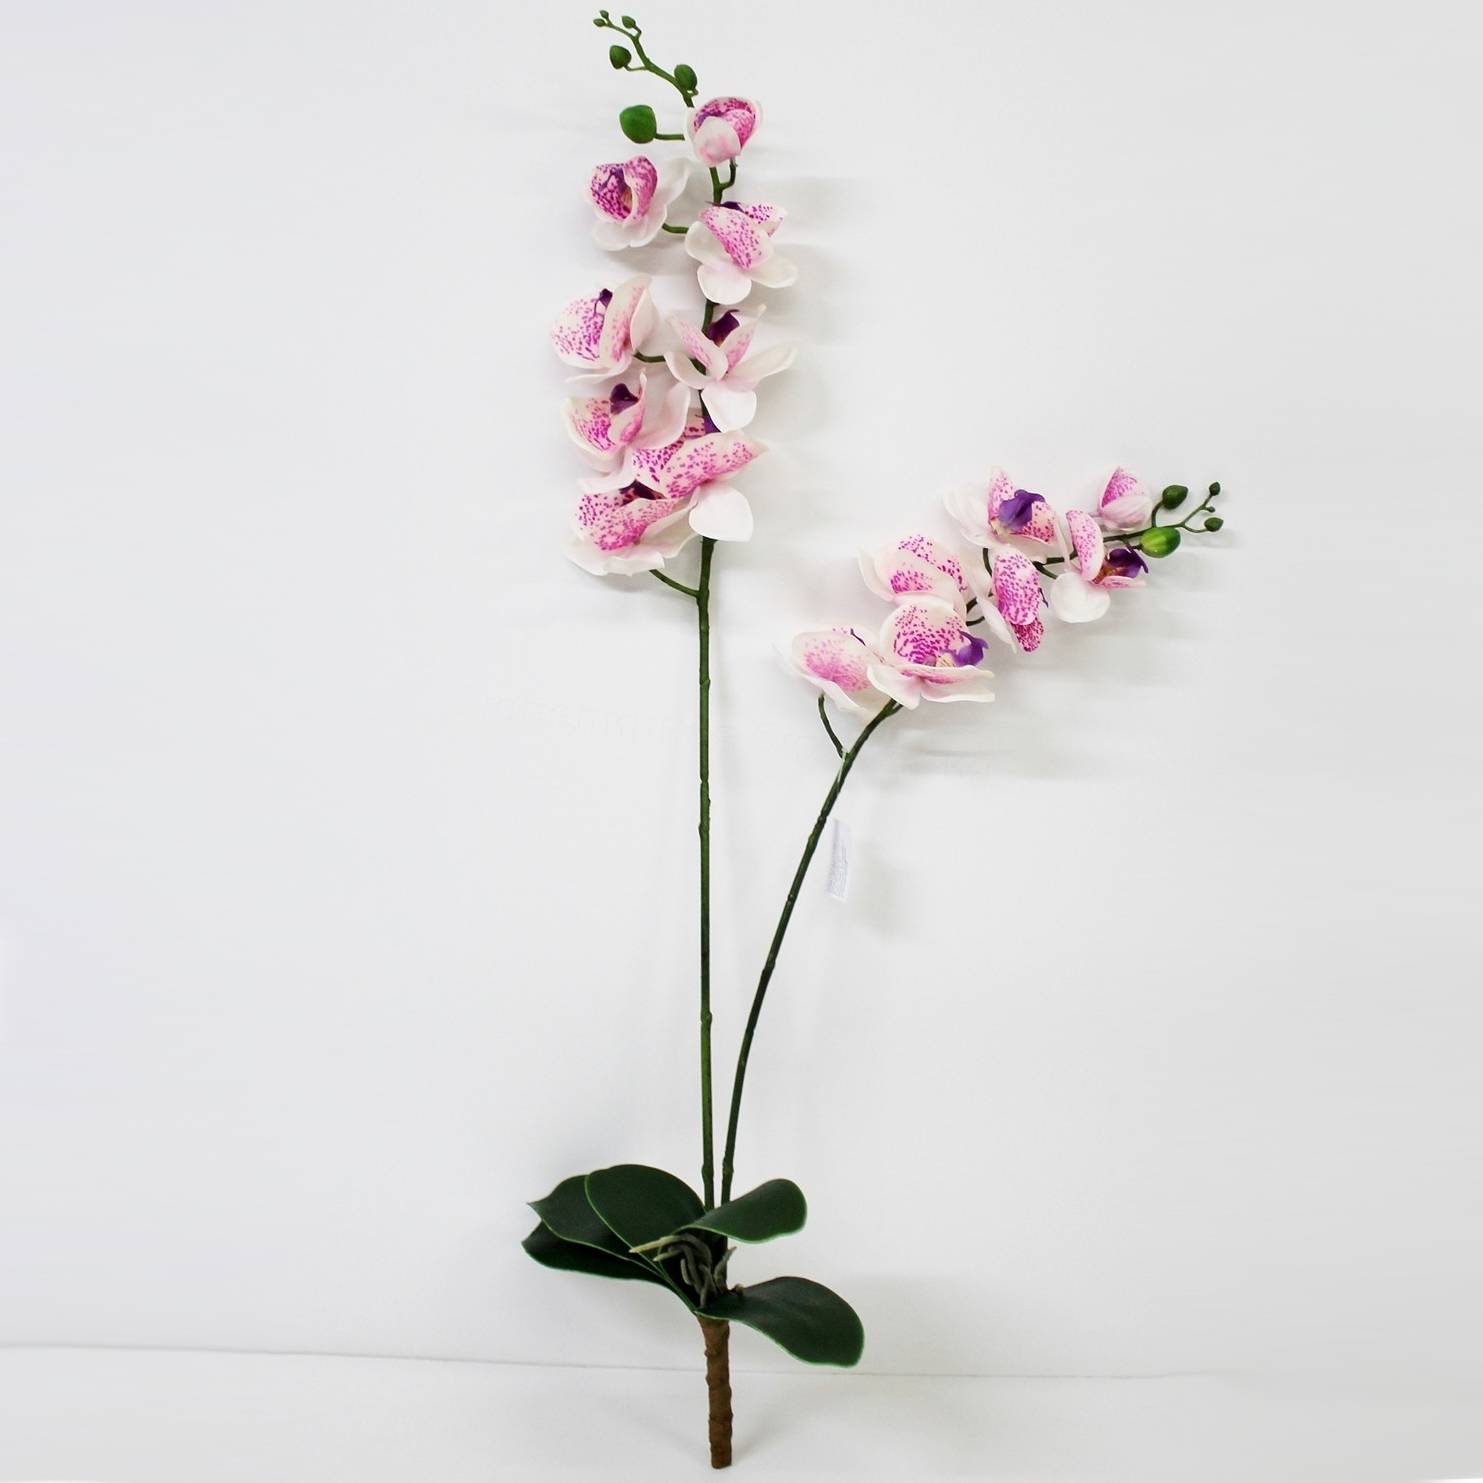 сциндапcус конэко о ампельный искусственный с листьями из латекса 90 см Орхидея фаленопсис с листьями Конэко-О KR_882 90 см